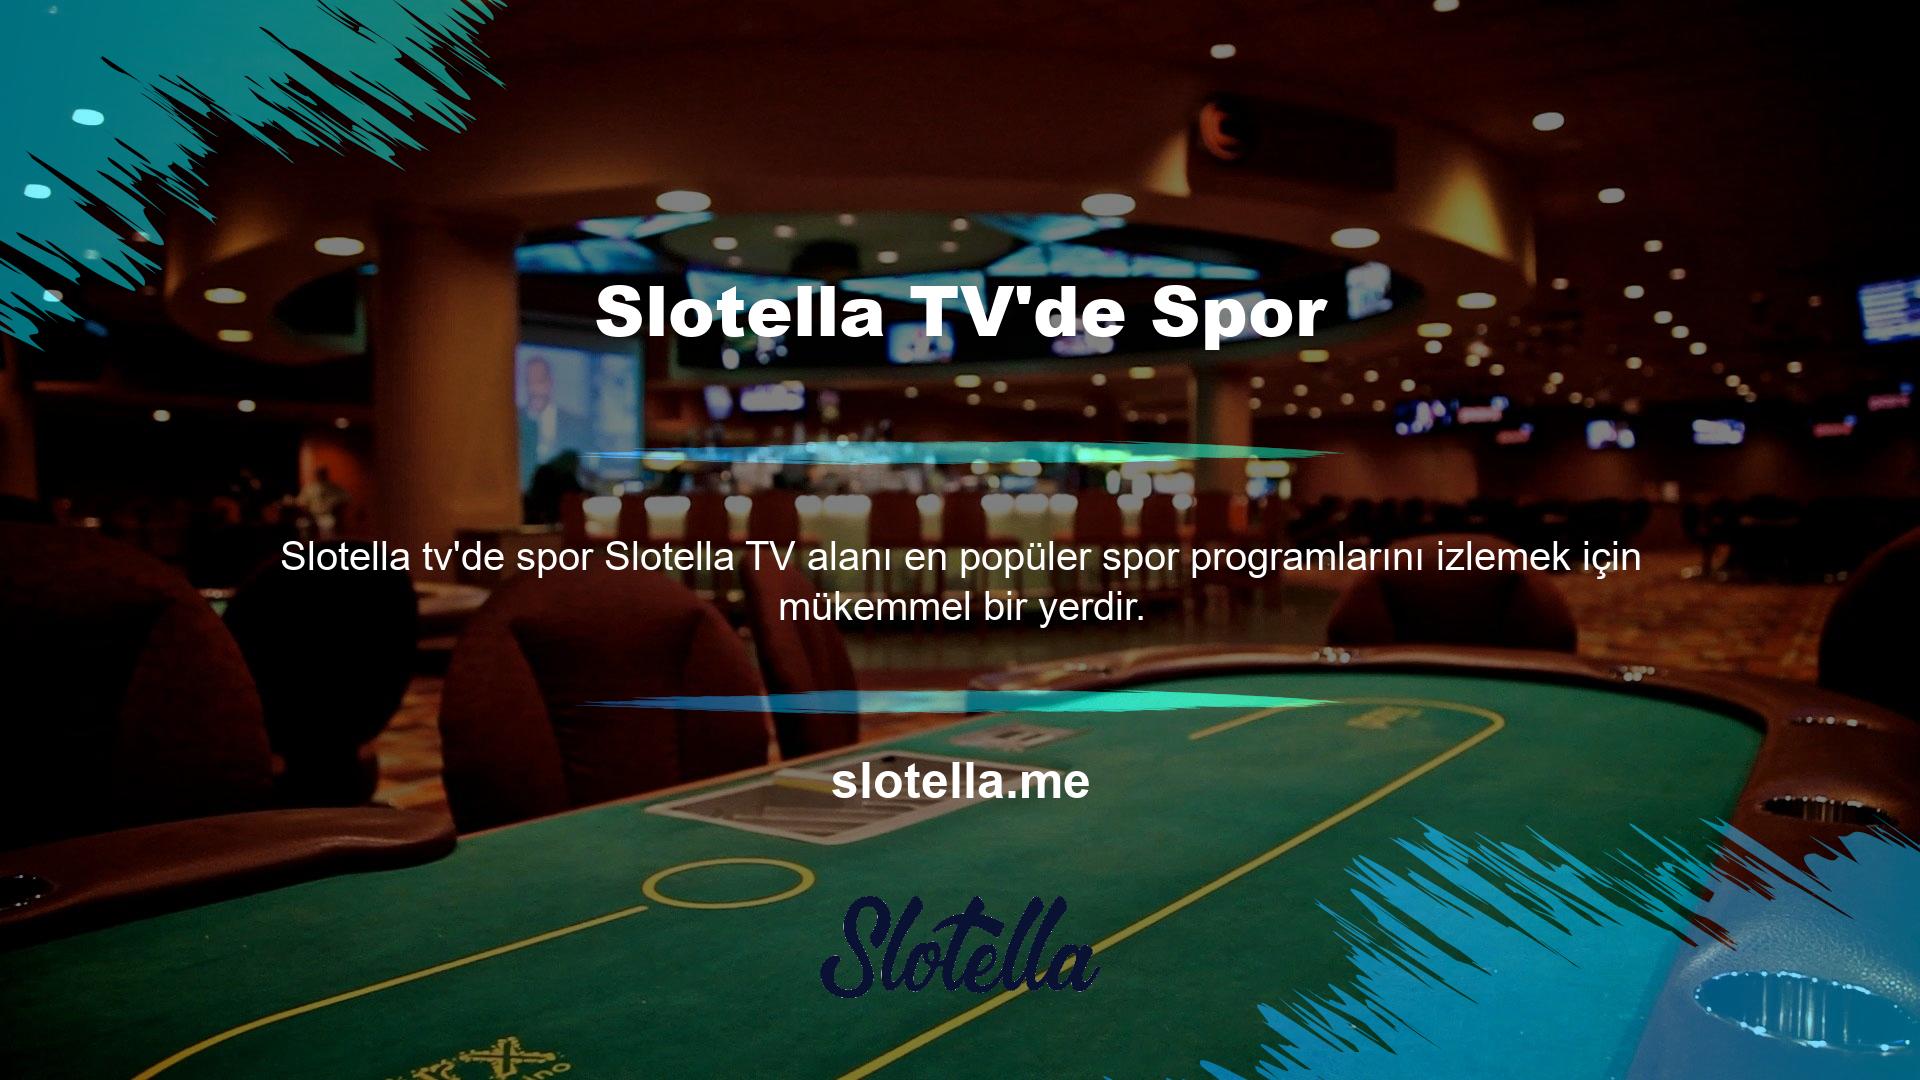 Slotella canlı maç seçiminin ana unsuru, Slotella TV'de hangi sporların daha çok yayınlandığıdır